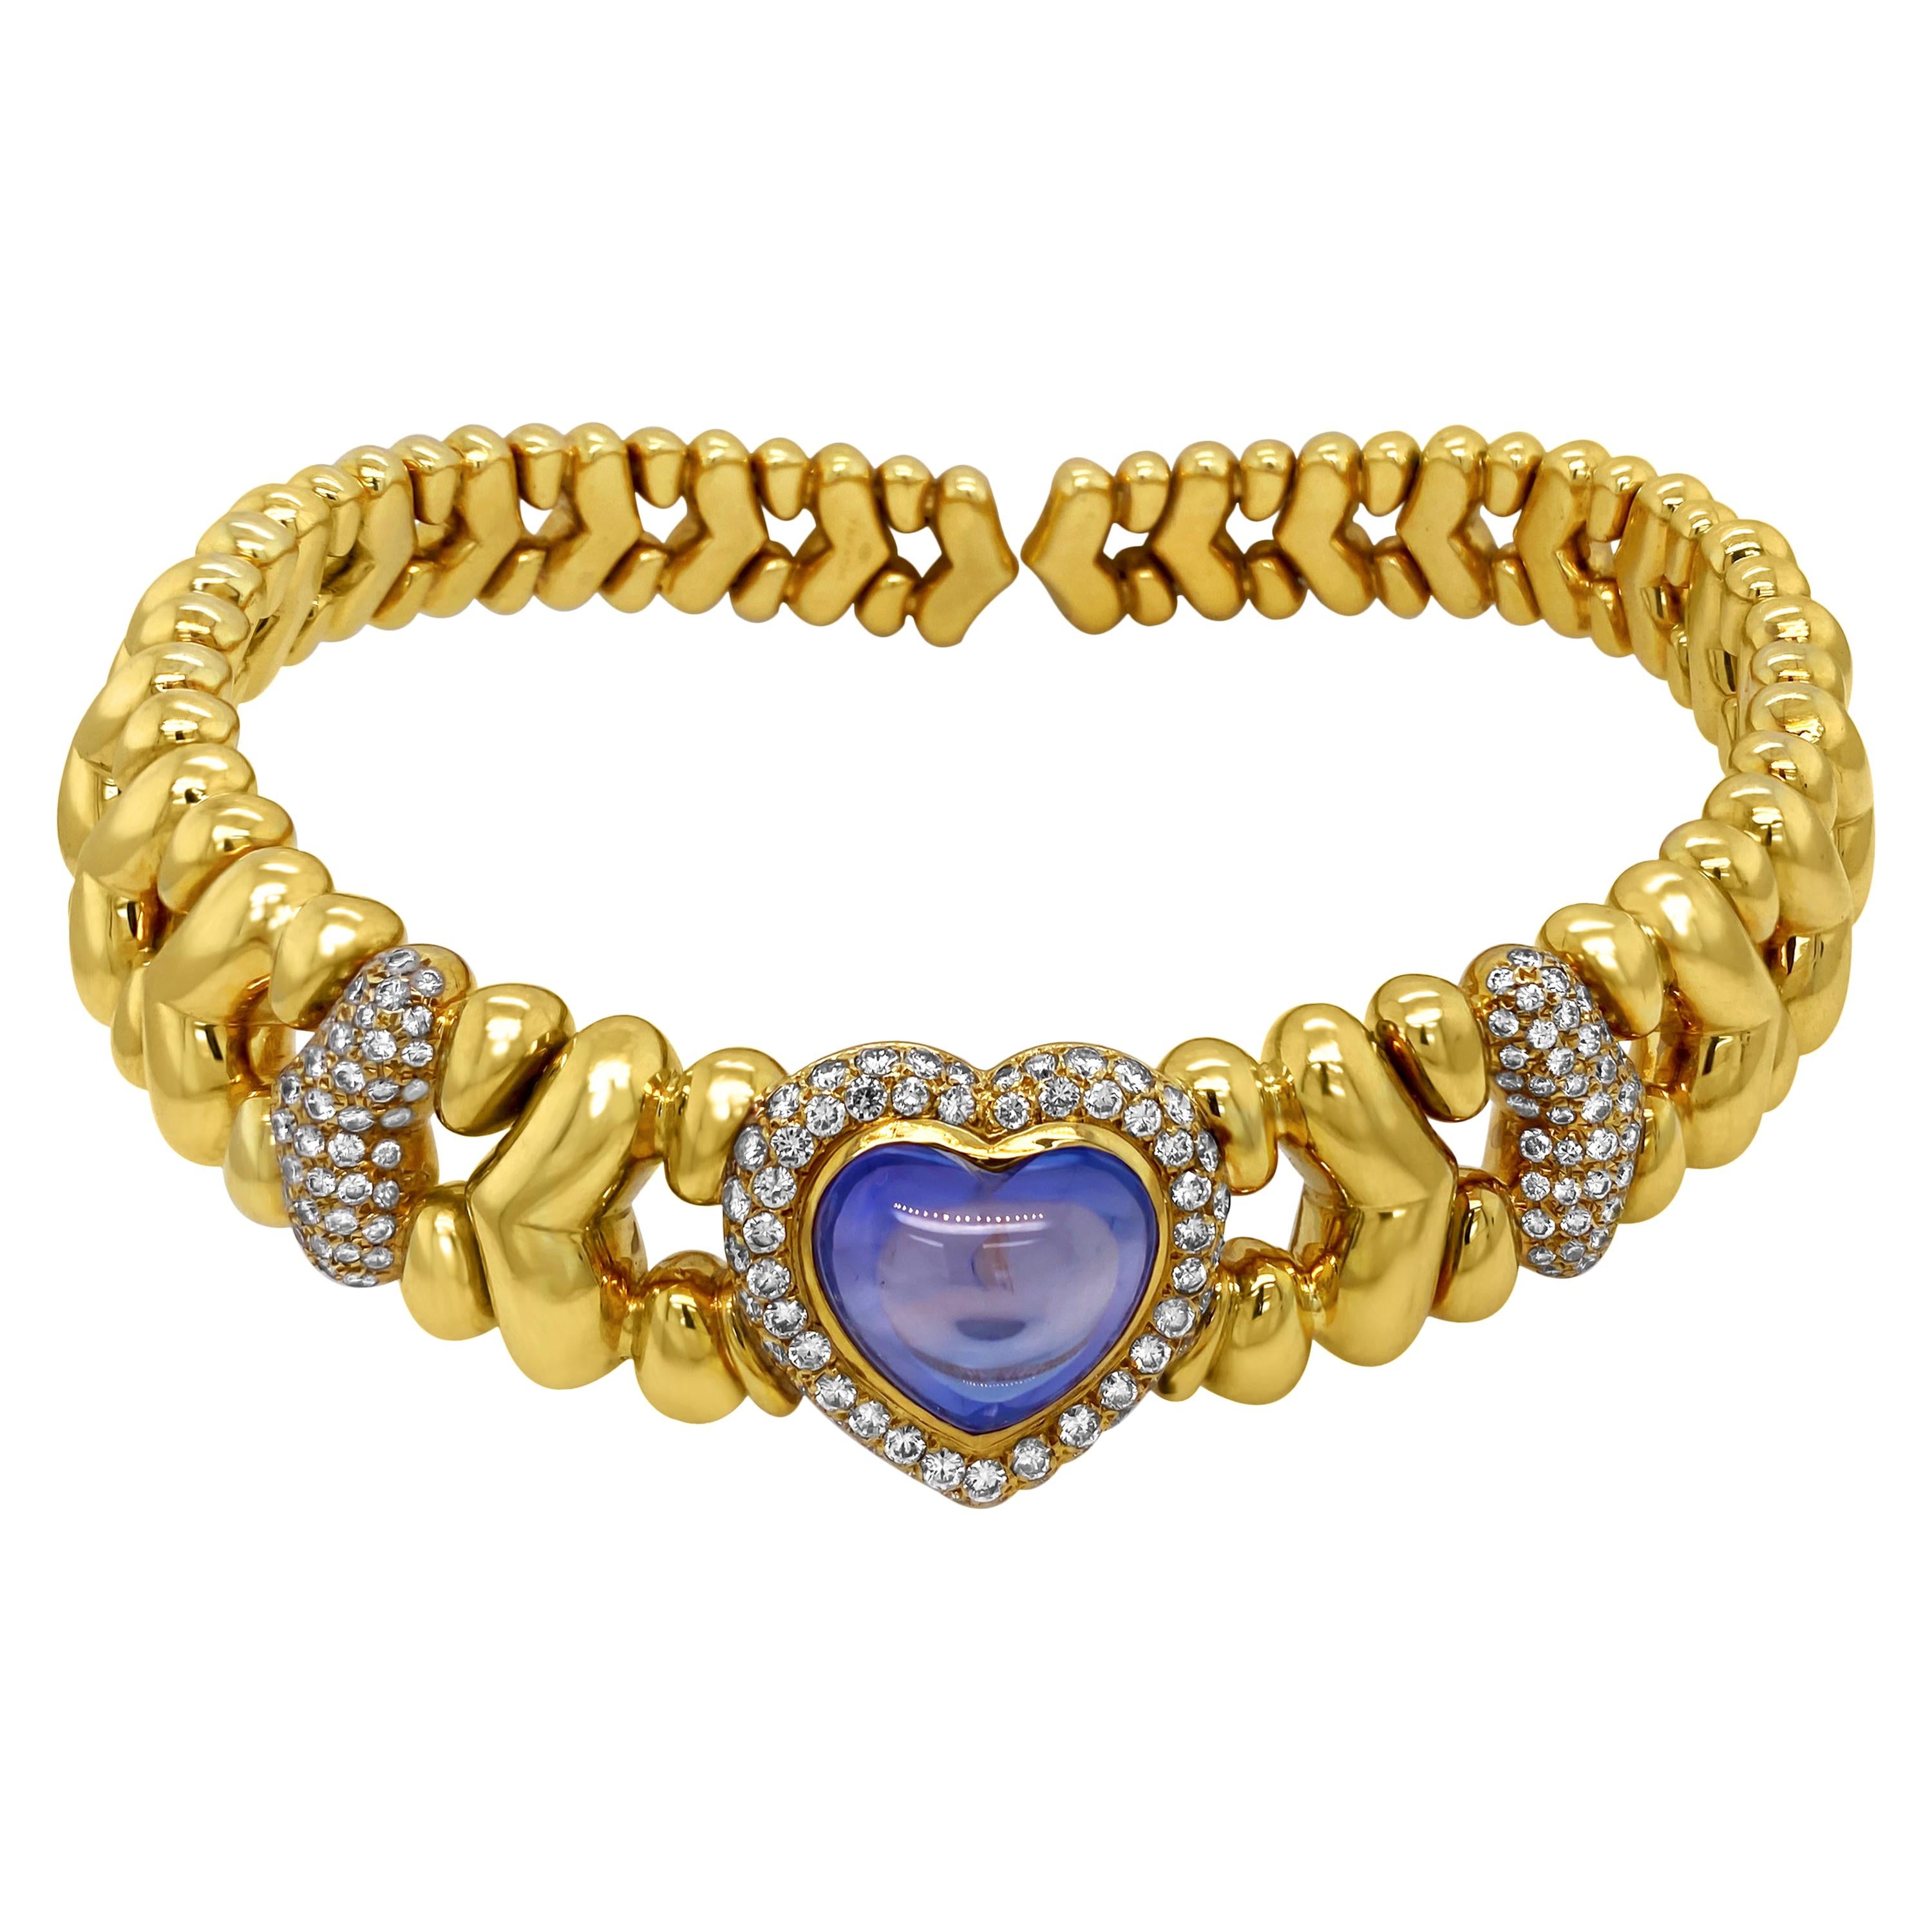 Faraone Collier ras du cou en or 18 carats avec cabochon de saphir bleu en forme de cœur